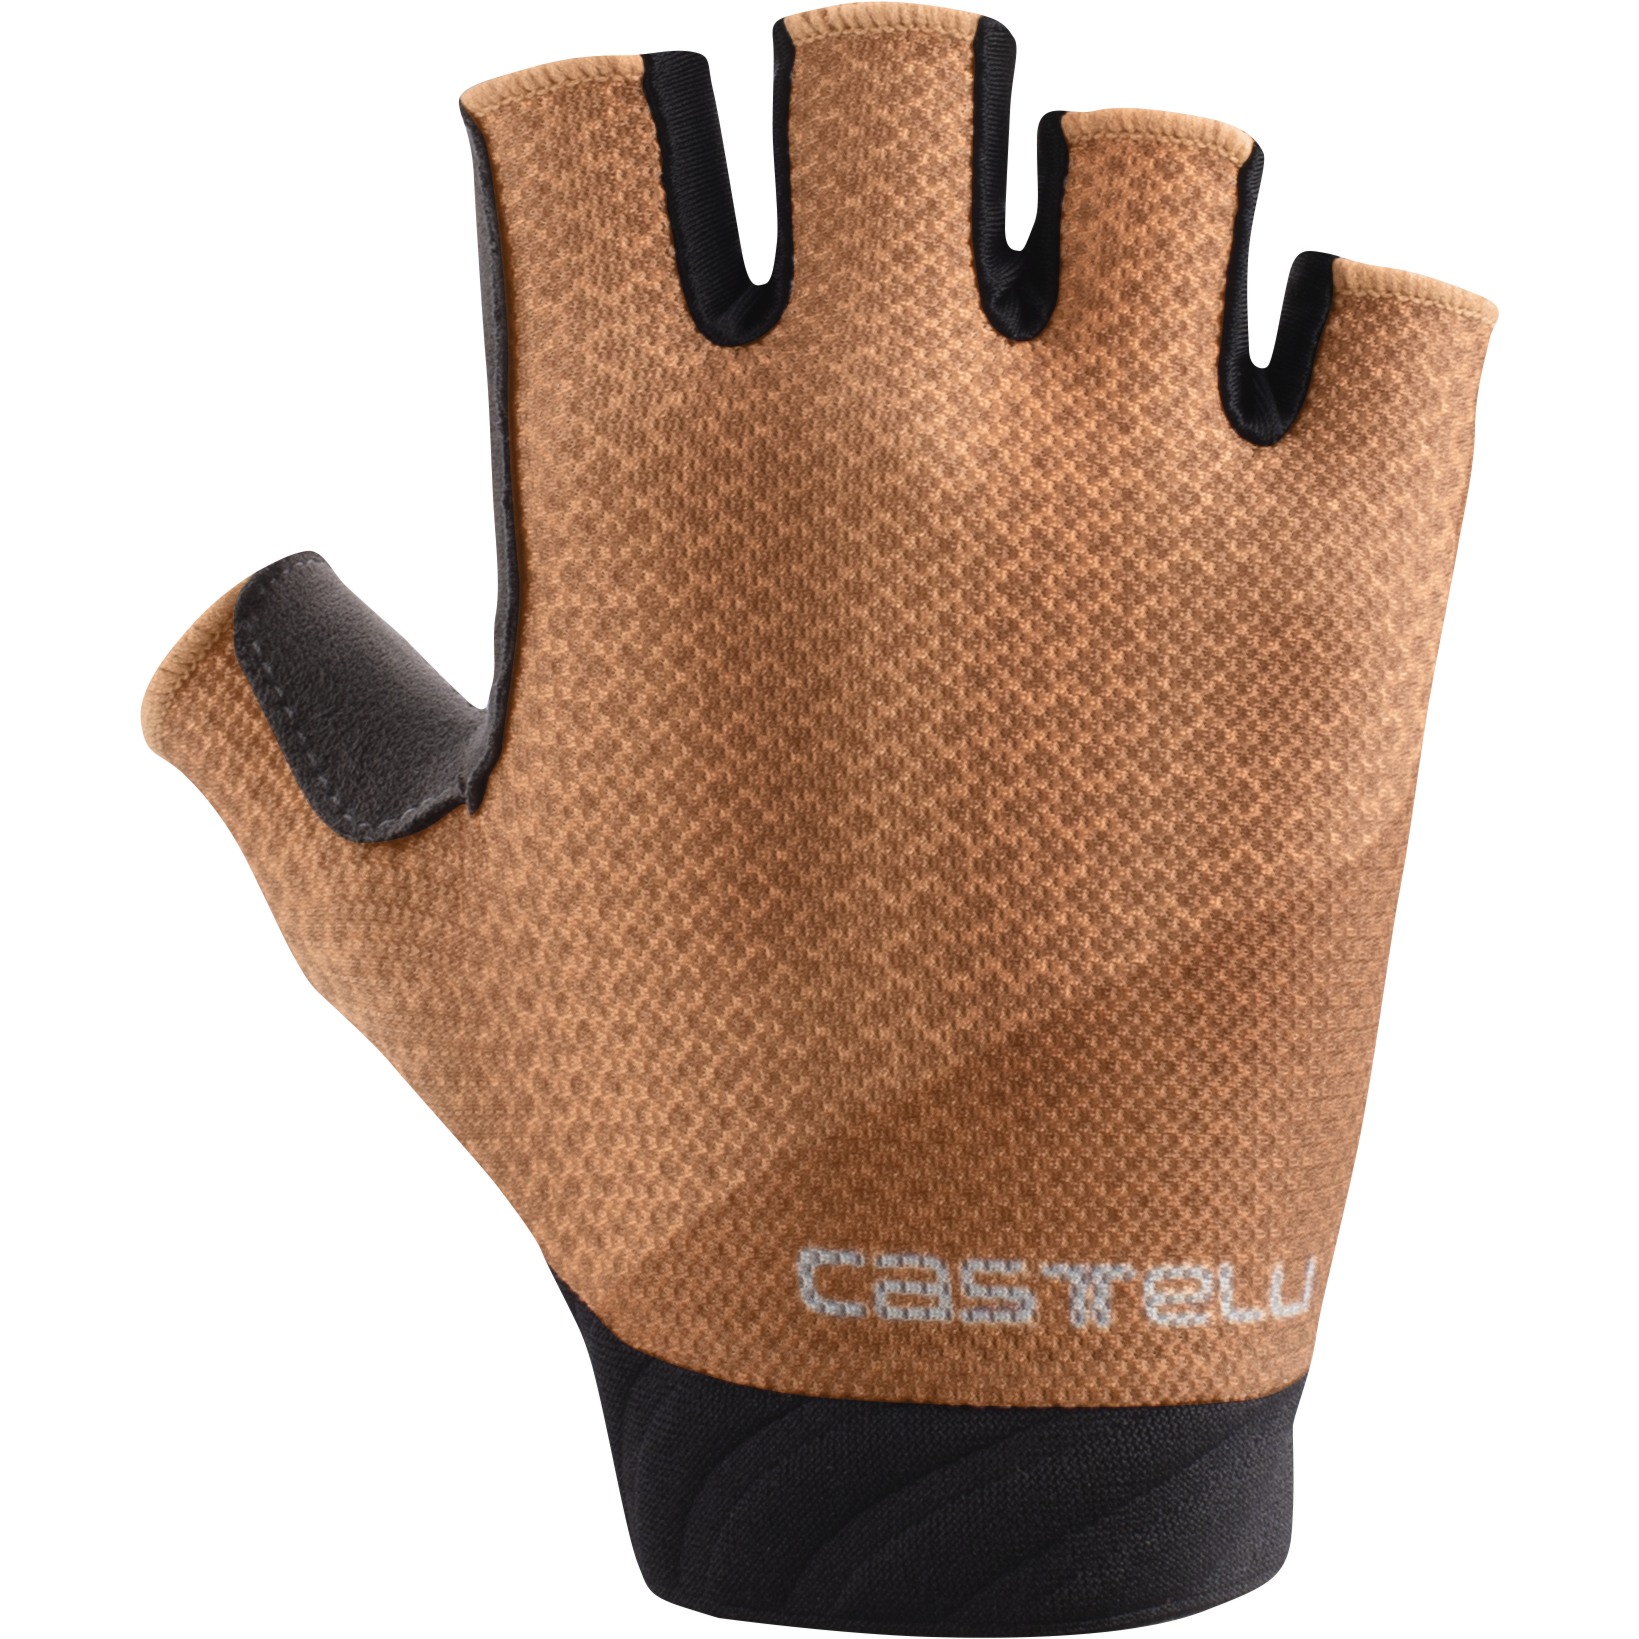 Productfoto van Castelli Roubaix Gel 2 Handschoenen Dames - soft orange 866